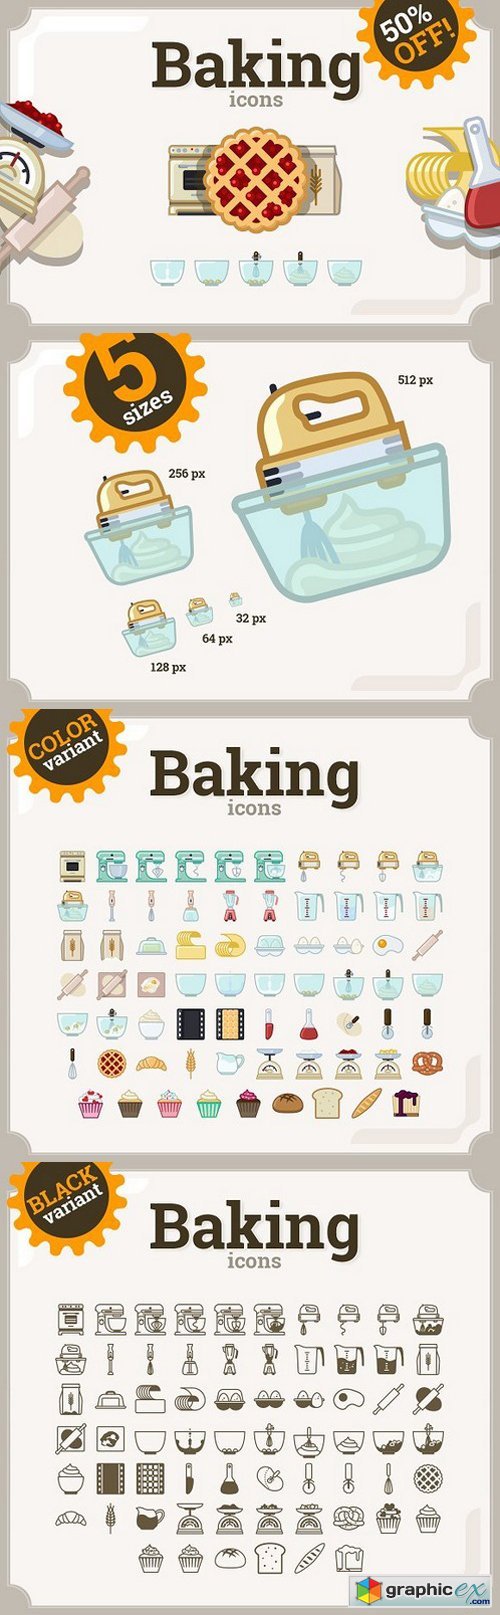 Baking icons set (69 + 66)